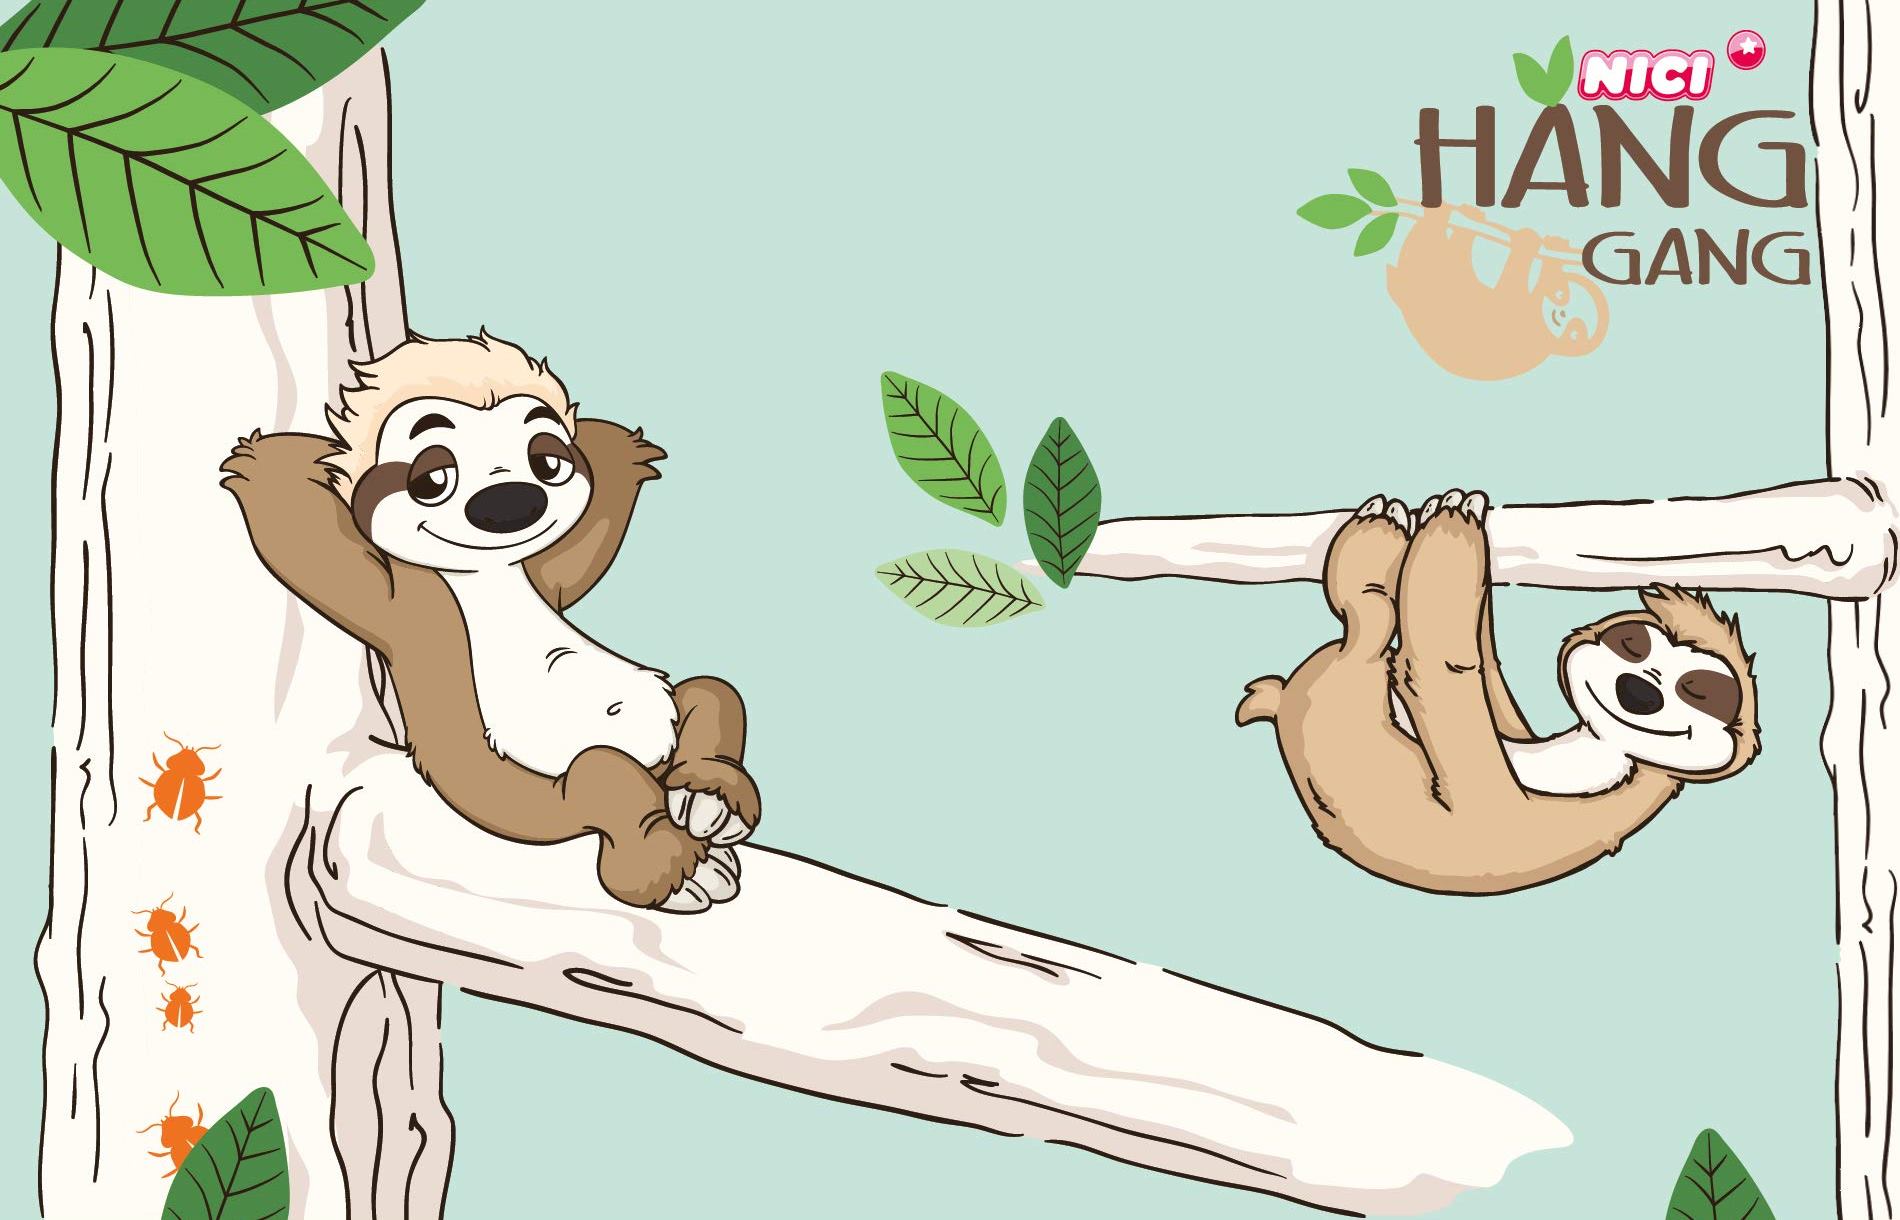 Plyšová hračka NICI Hang Gang Dangling Sloth má našuchorený hnedo-béžový kabátik a veľmi roztomilý kukuč, vďaka čomu uchváti všetkých chlapcov aj dievčatá bez rozdielu.